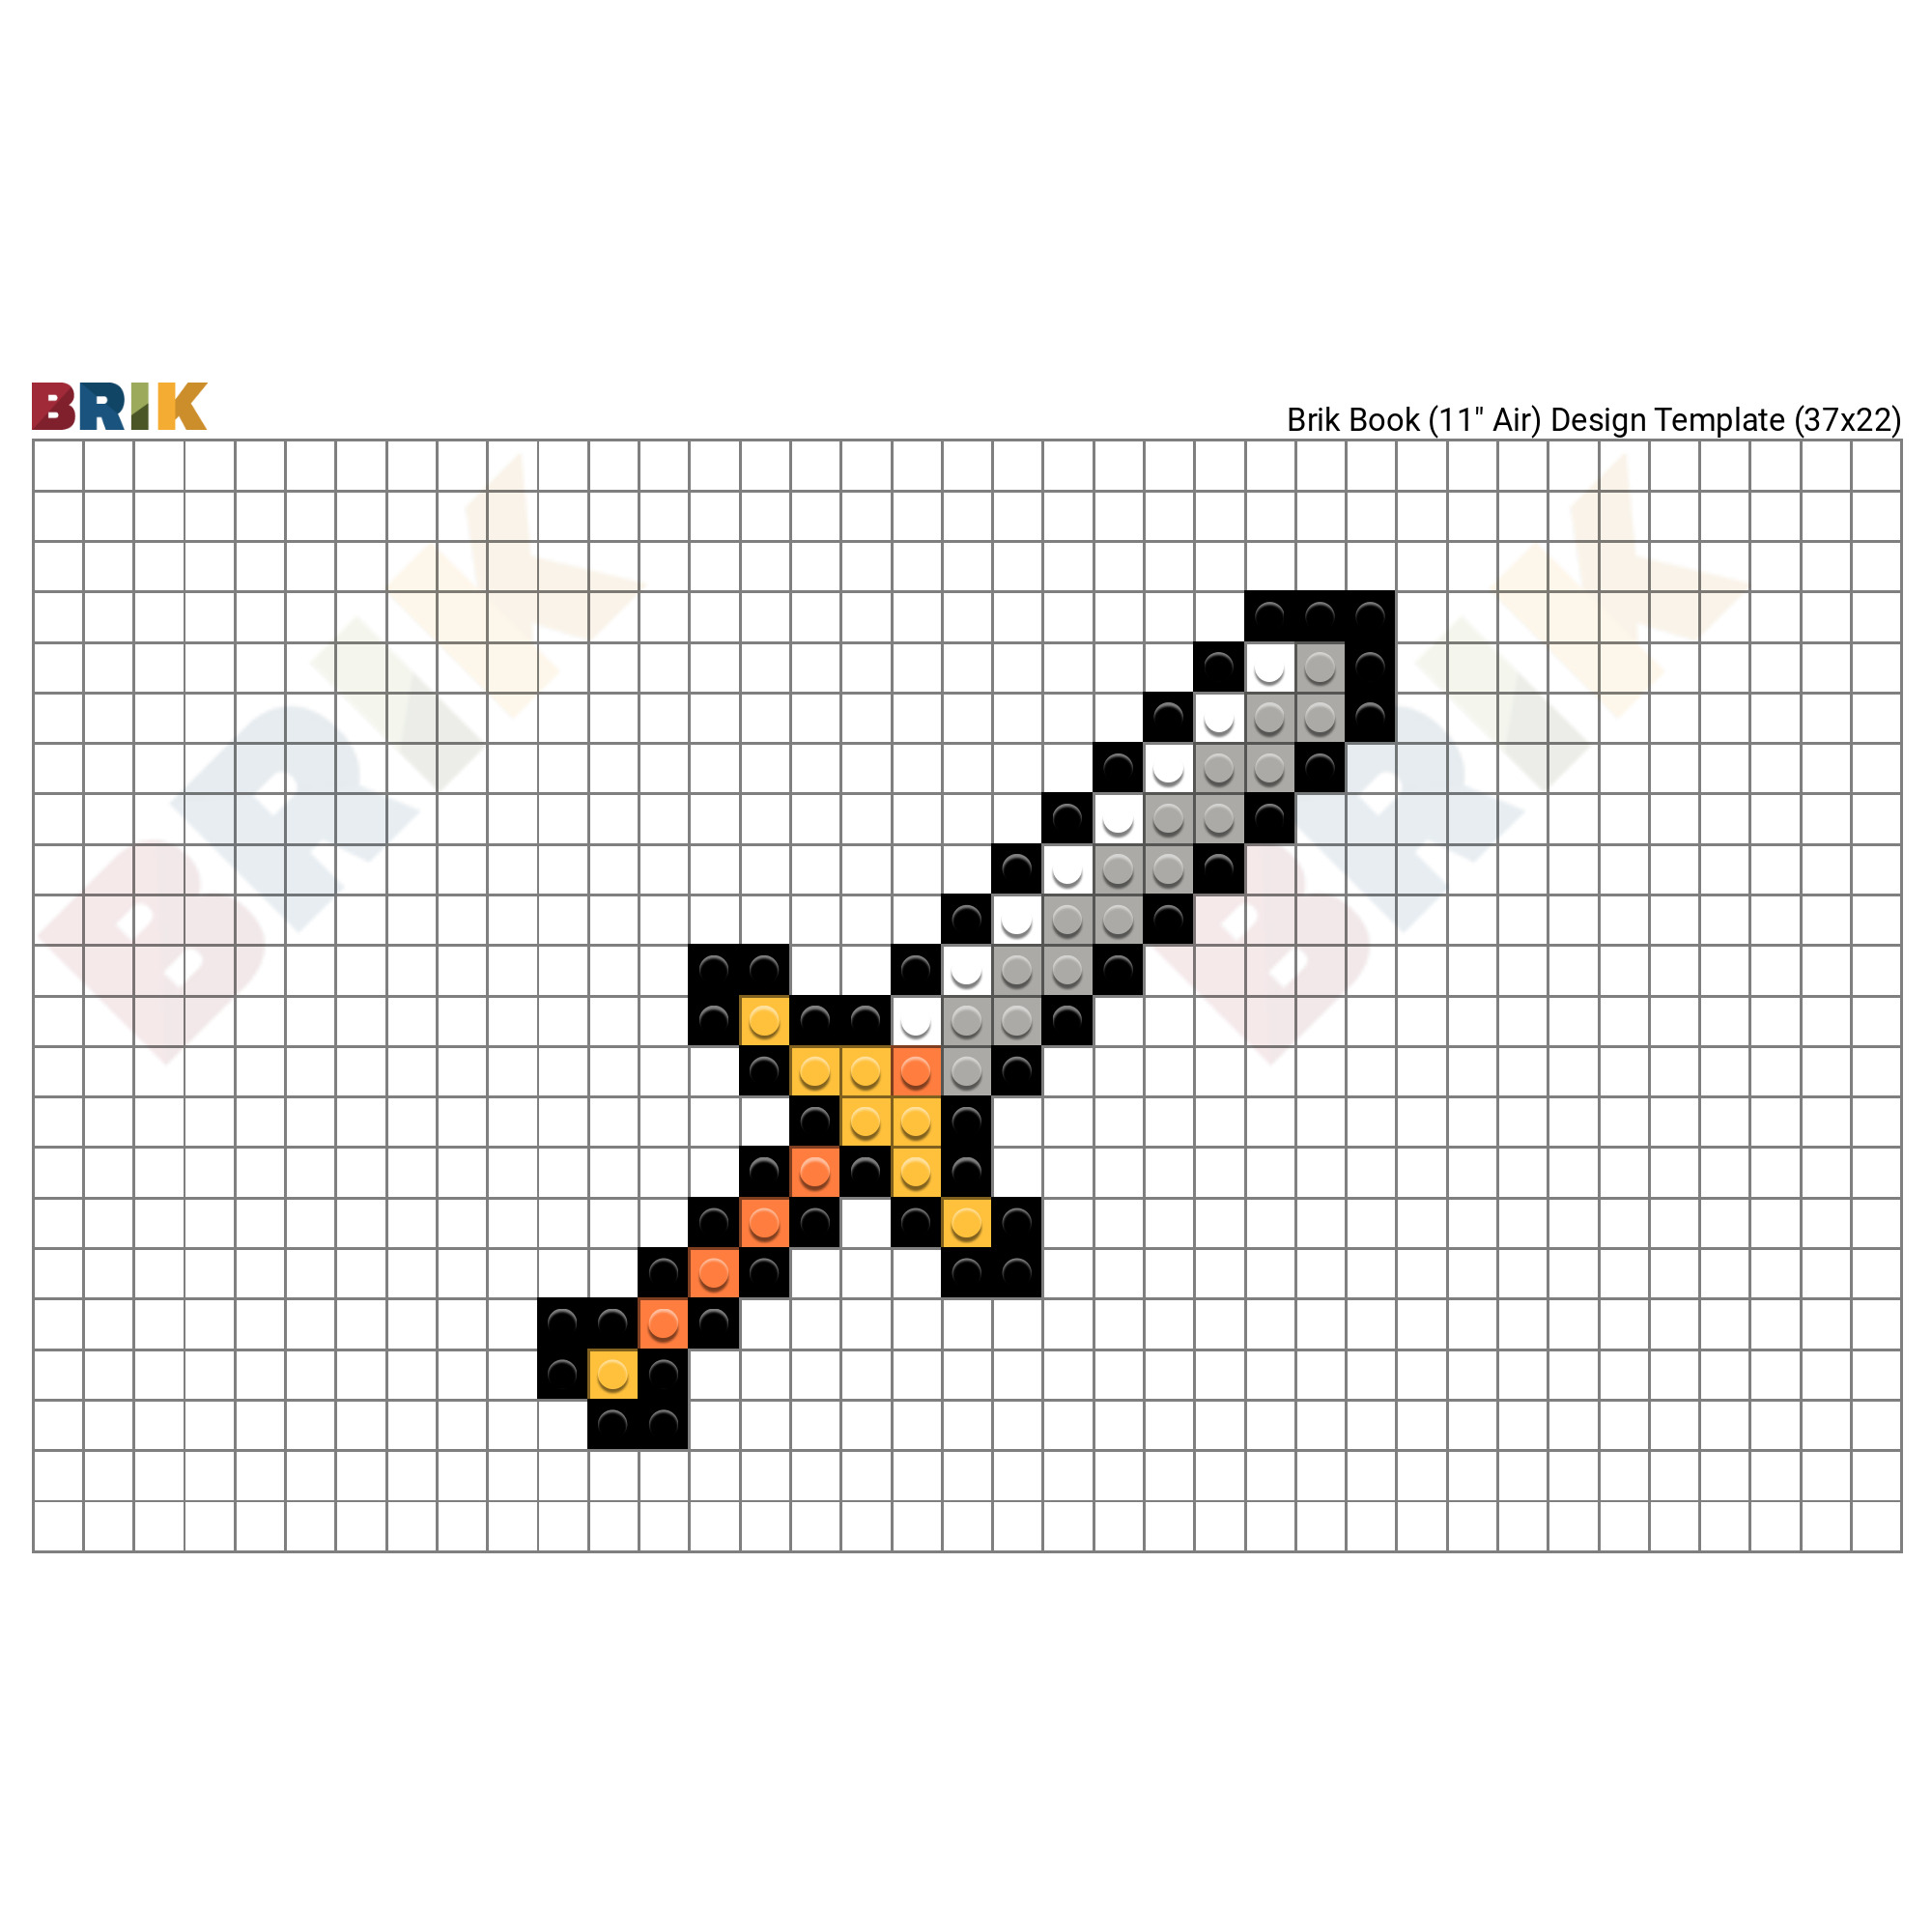 diamond sword pixel art